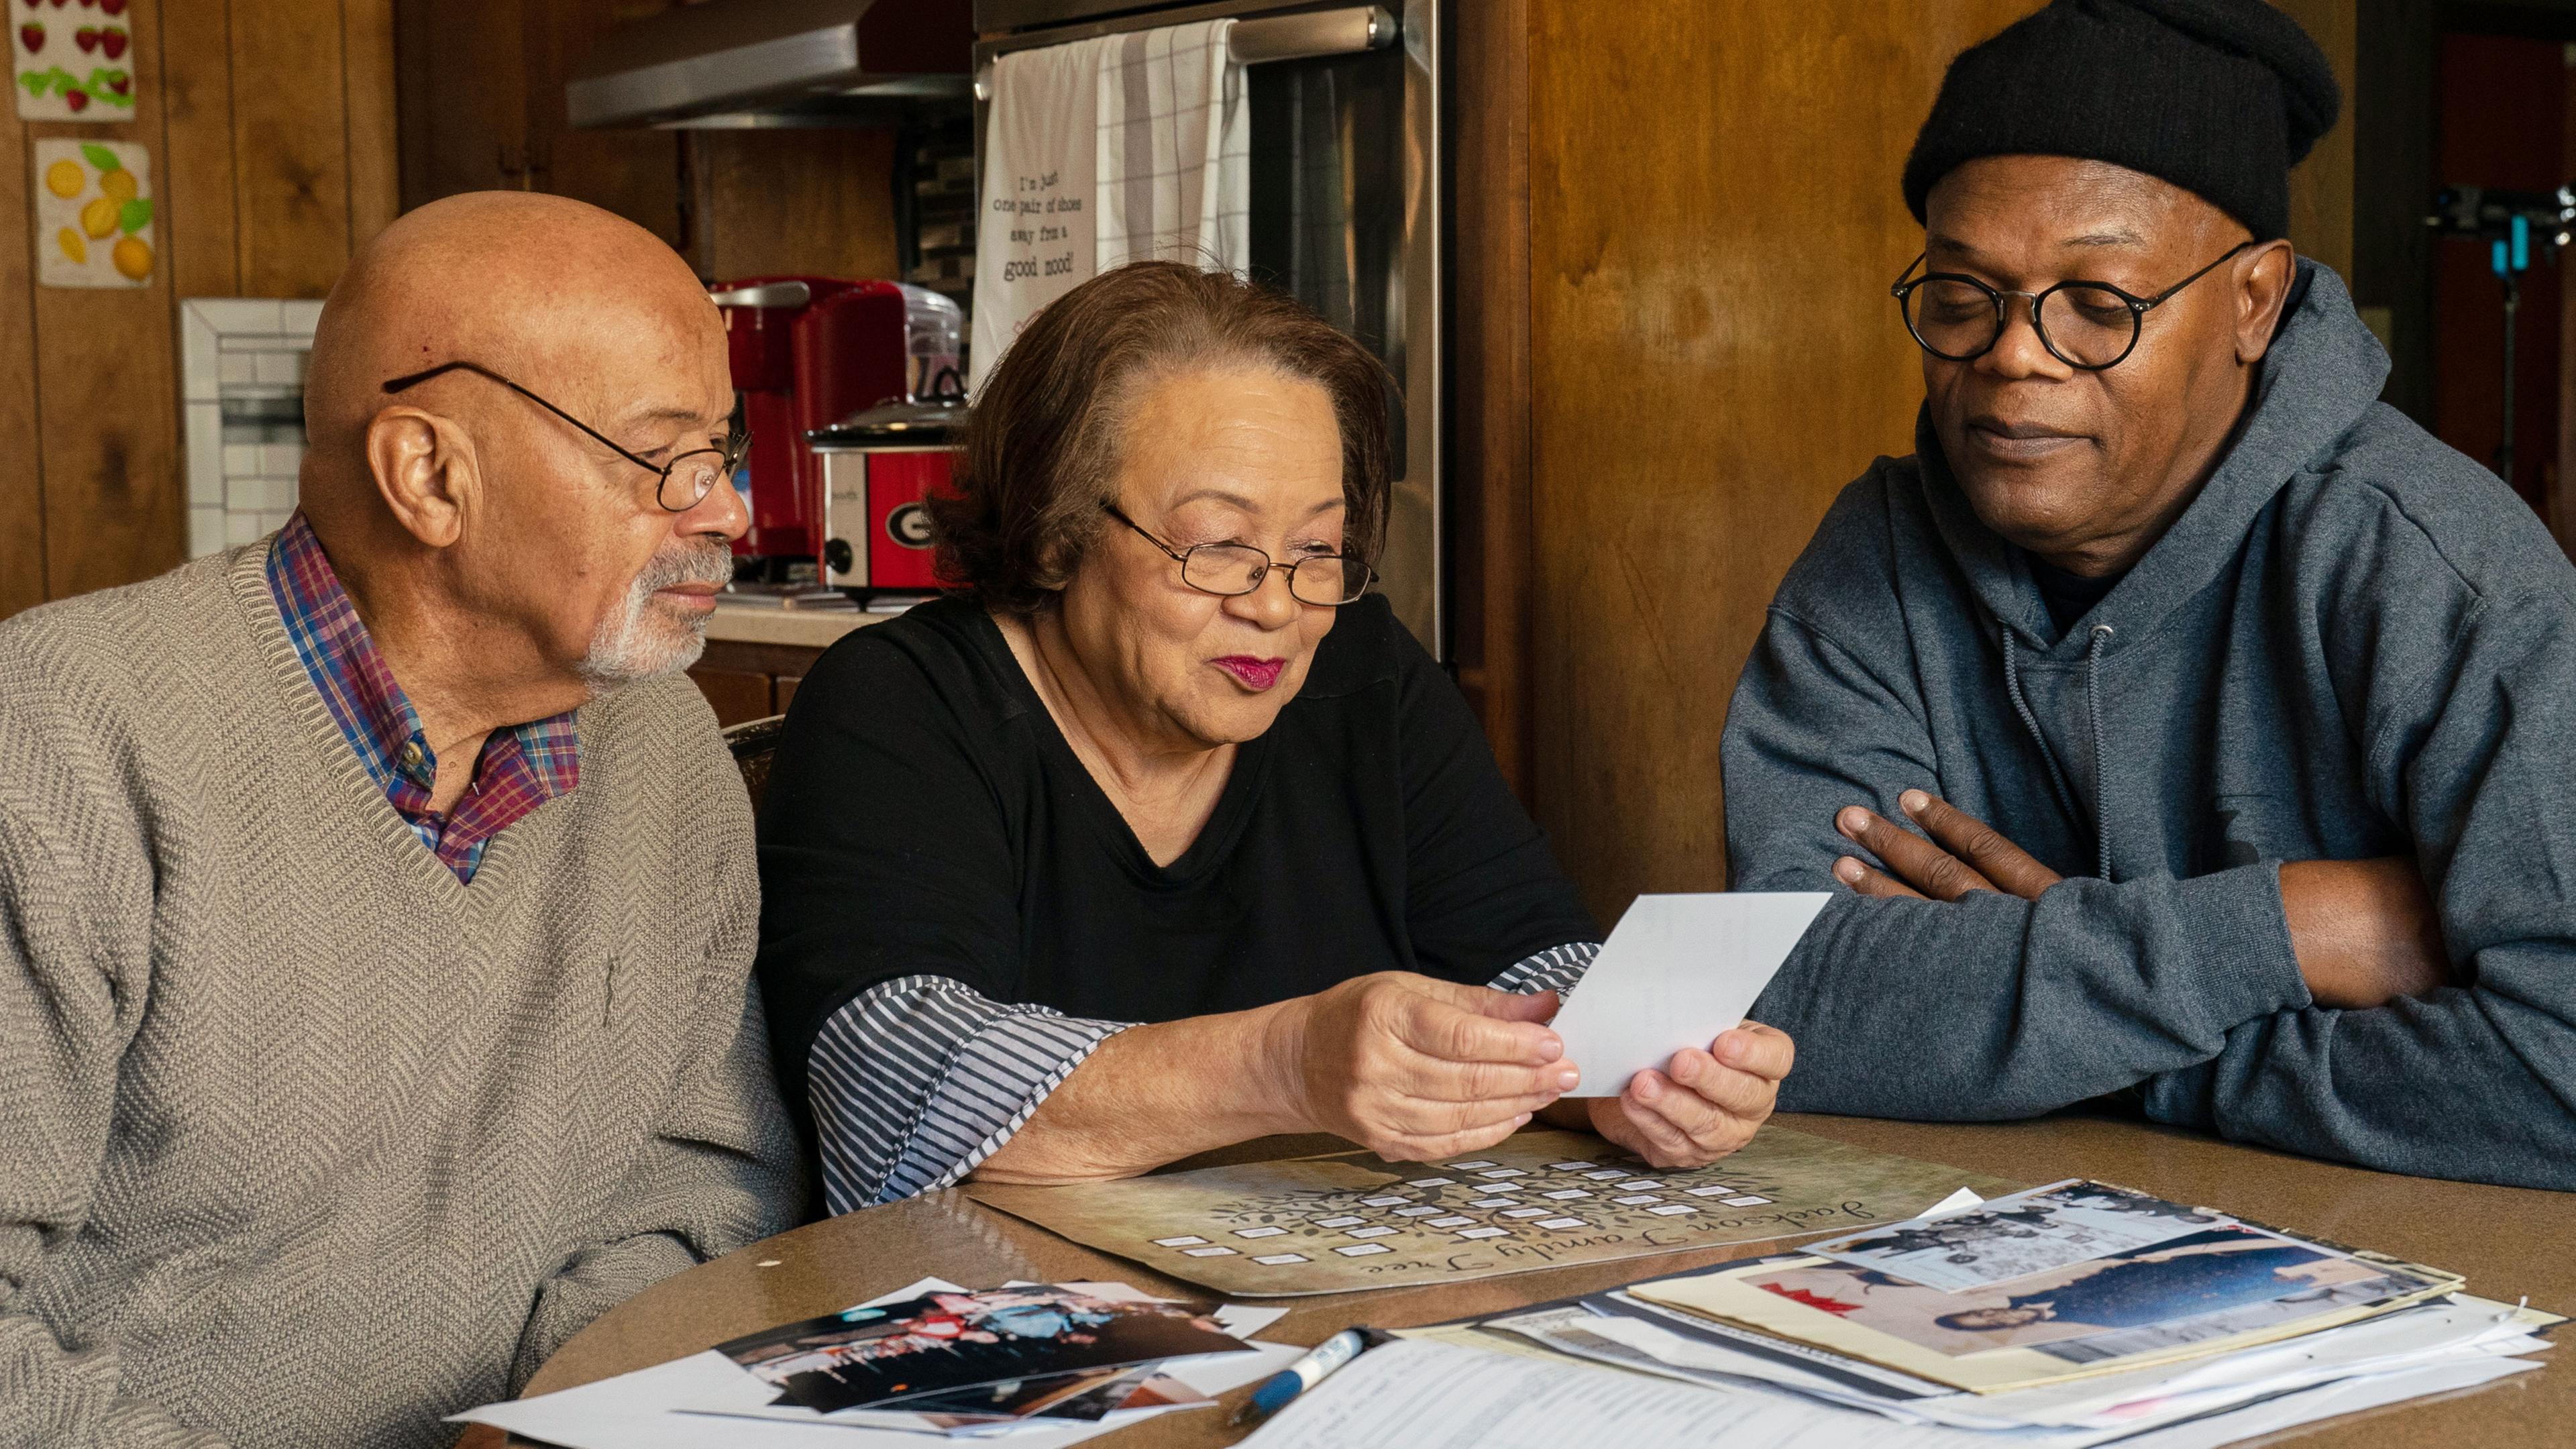 Schauspieler Samuel L. Jackson sitzt gemeinsam mit seiner Cousine Hilda und seinem Cousin Arthur an einem Tisch, auf dem Fotos und Unterlagen liegen. Hilda hält ein Foto in den Händen, auf das alle drei schauen.